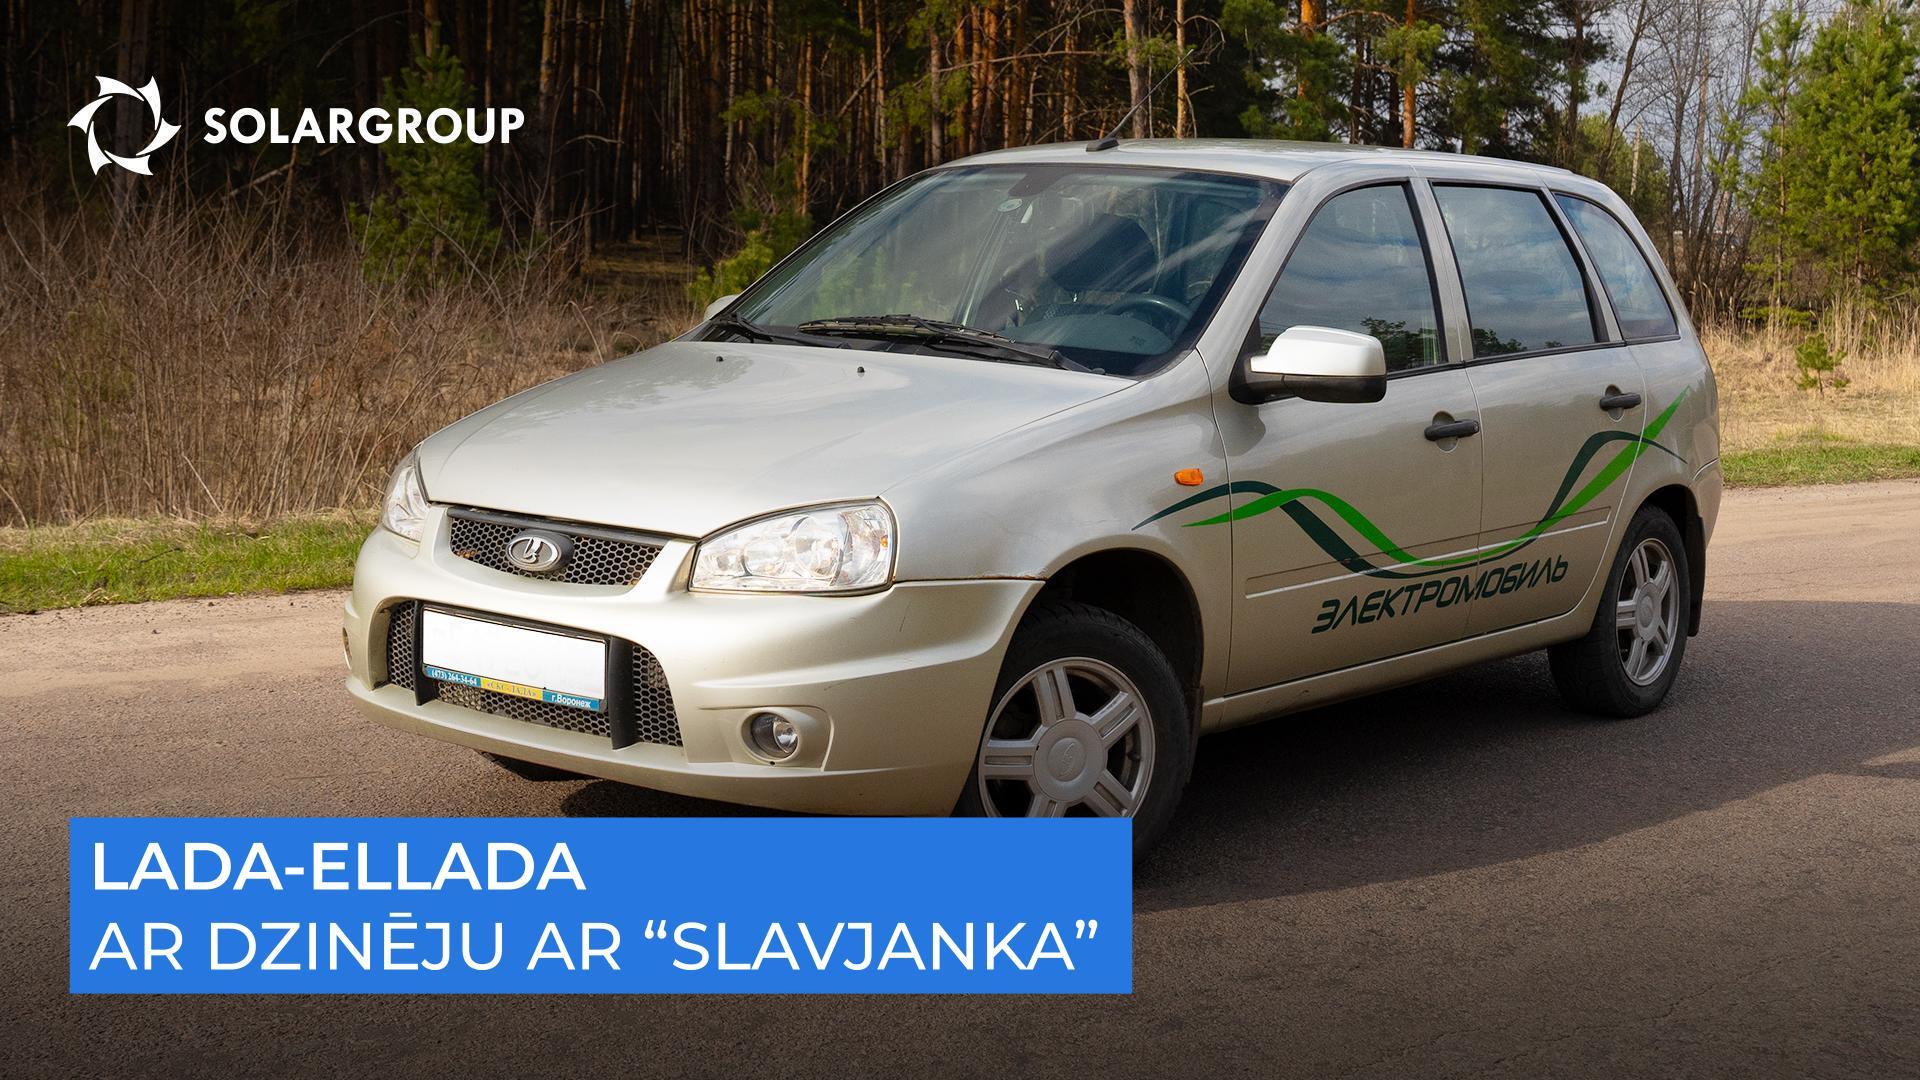 Ātrs, kluss un izturīgs: ko parādīja elektromobiļa ar “Slavjanka" braukšanas testi.